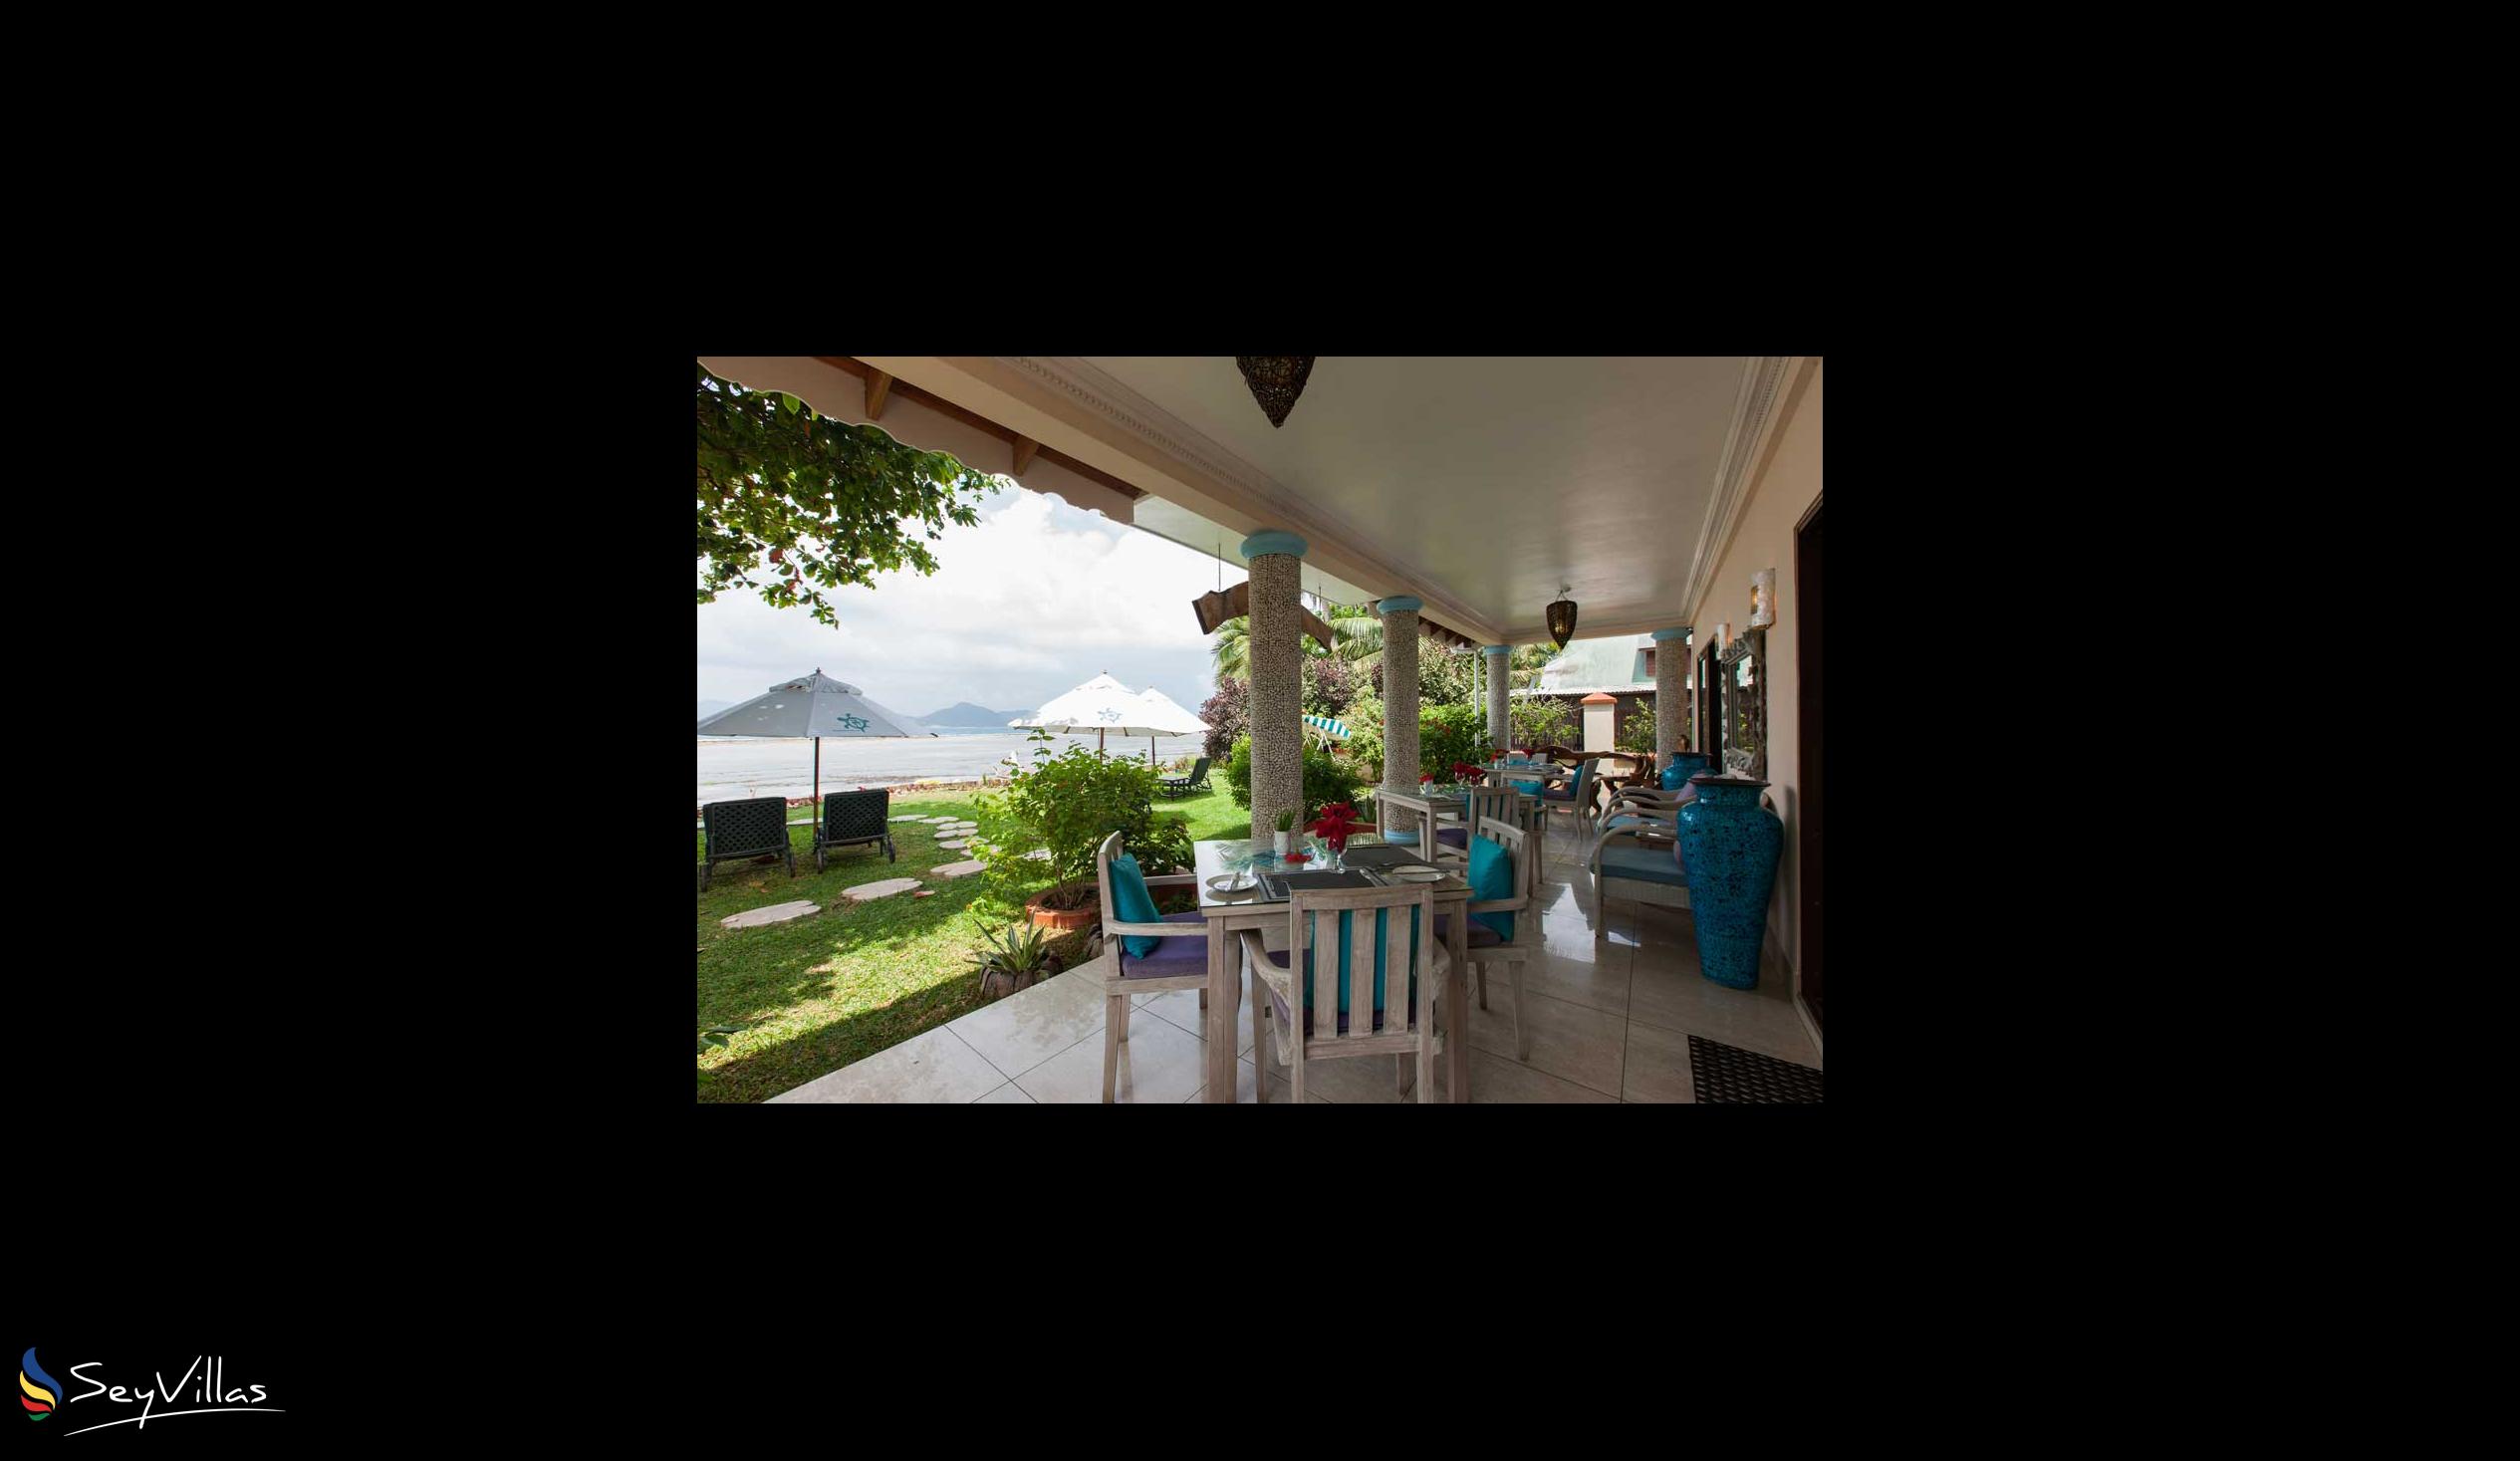 Foto 6: Le Relax Beach House - Intérieur - La Digue (Seychelles)